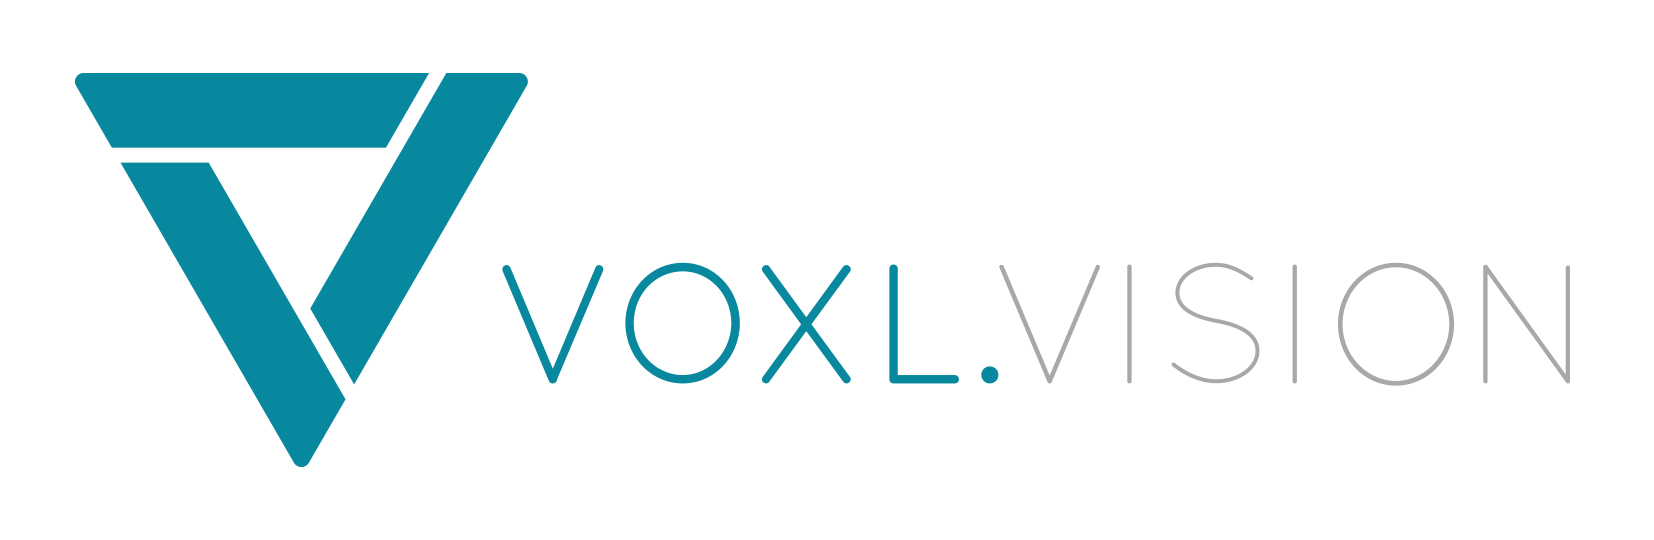 VoxlVision Logo Color